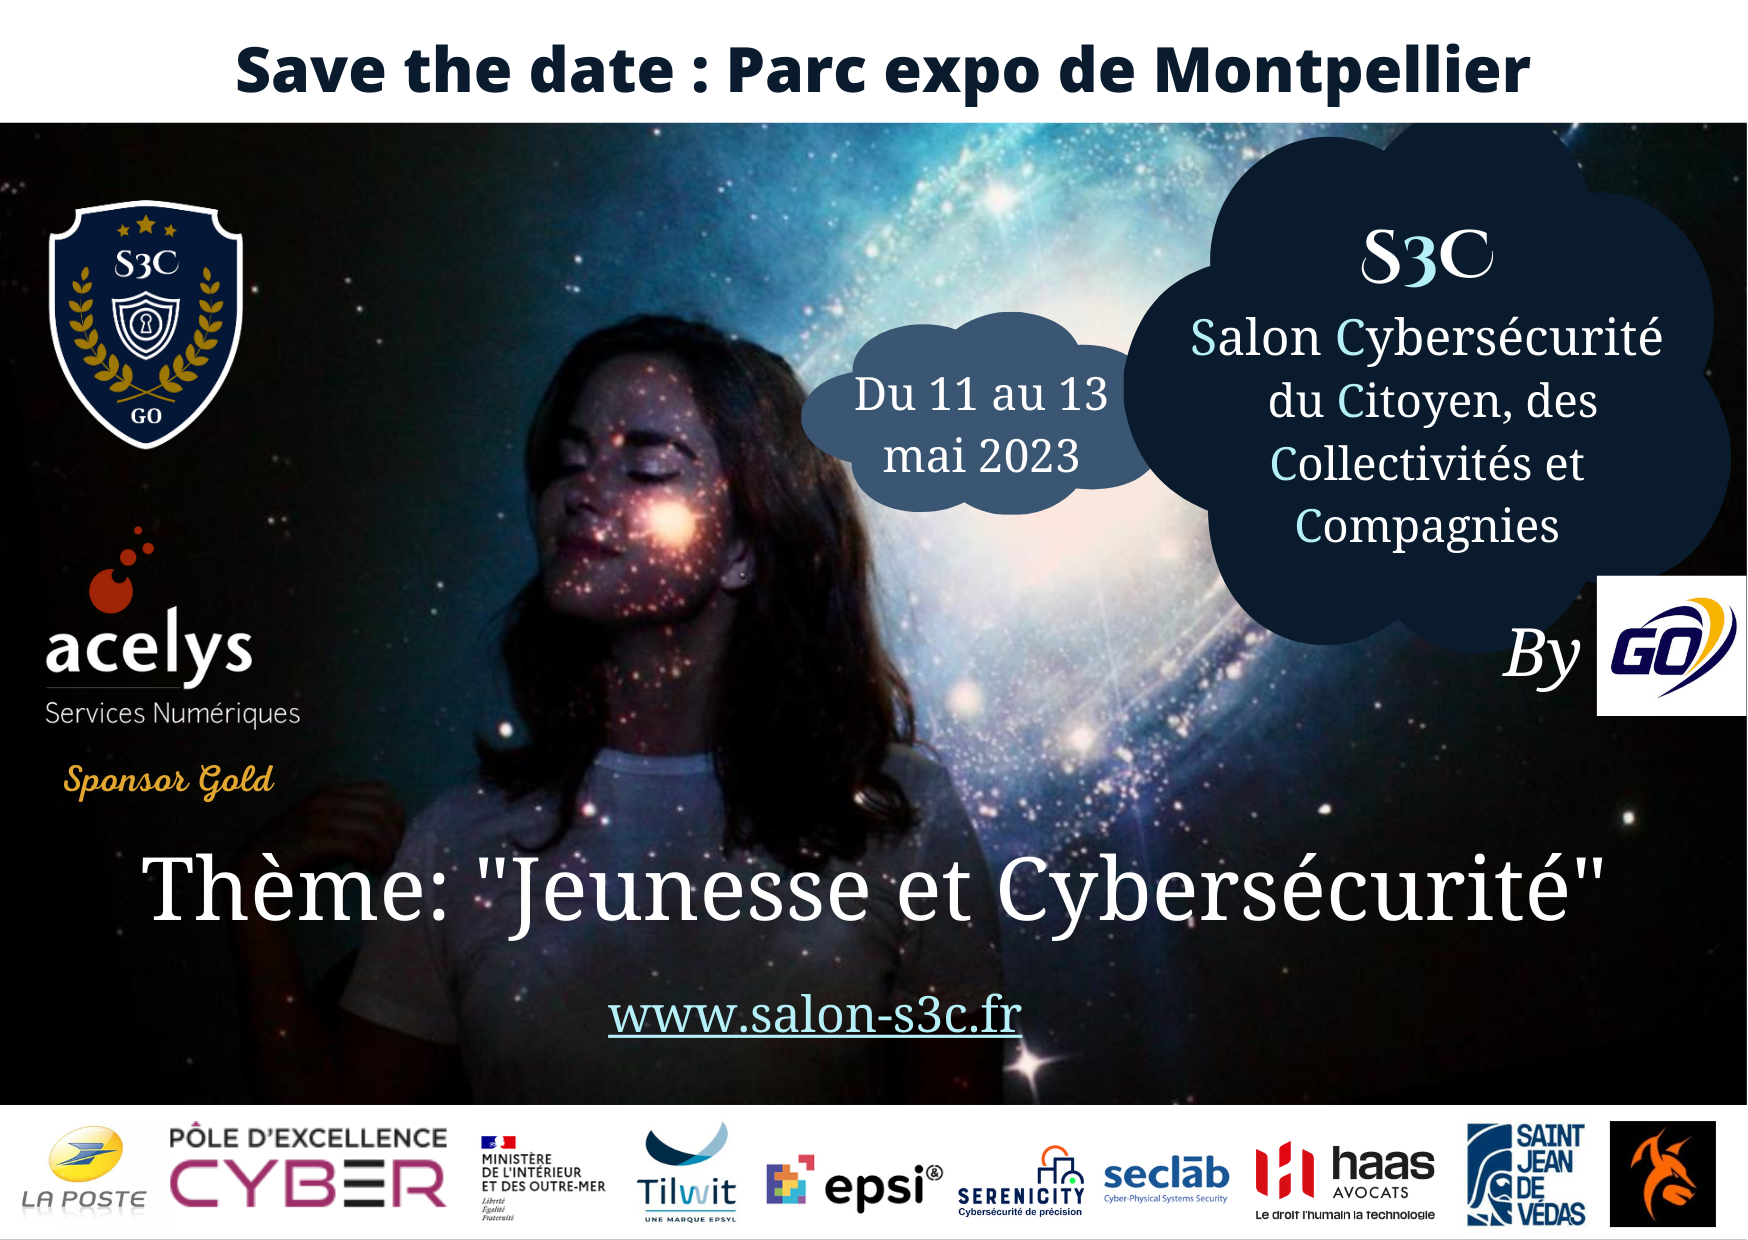 Salon cybersécurité S3C - Montpellier